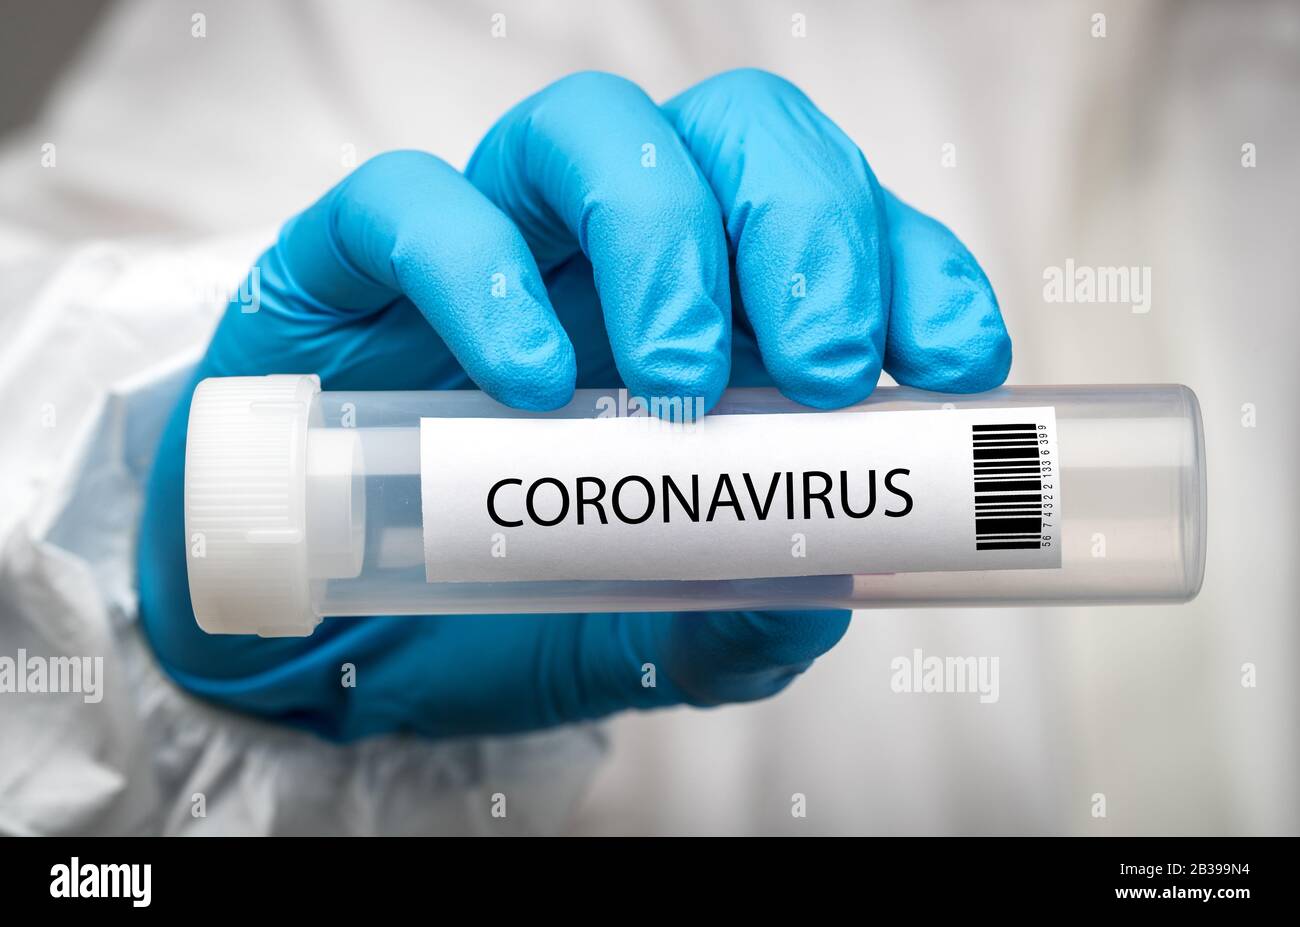 Coronavirus swab test Stock Photo